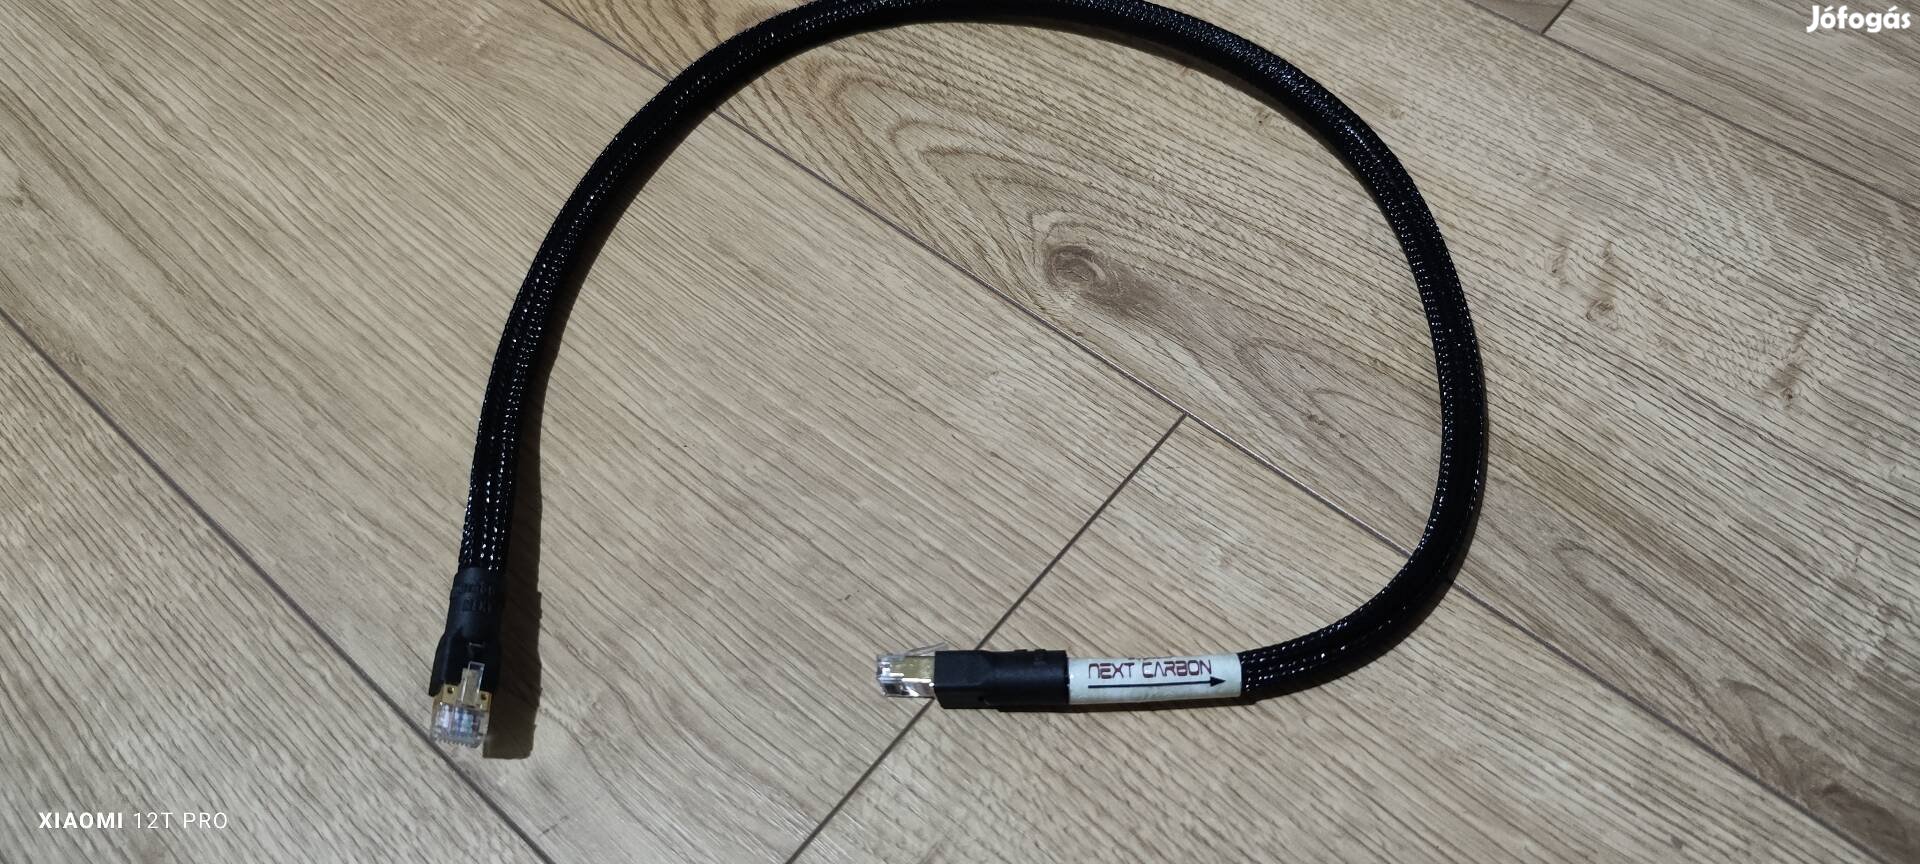 Hydra Next Carbon Neutral lan kábel 75cm kitűnő állapotban eladó.